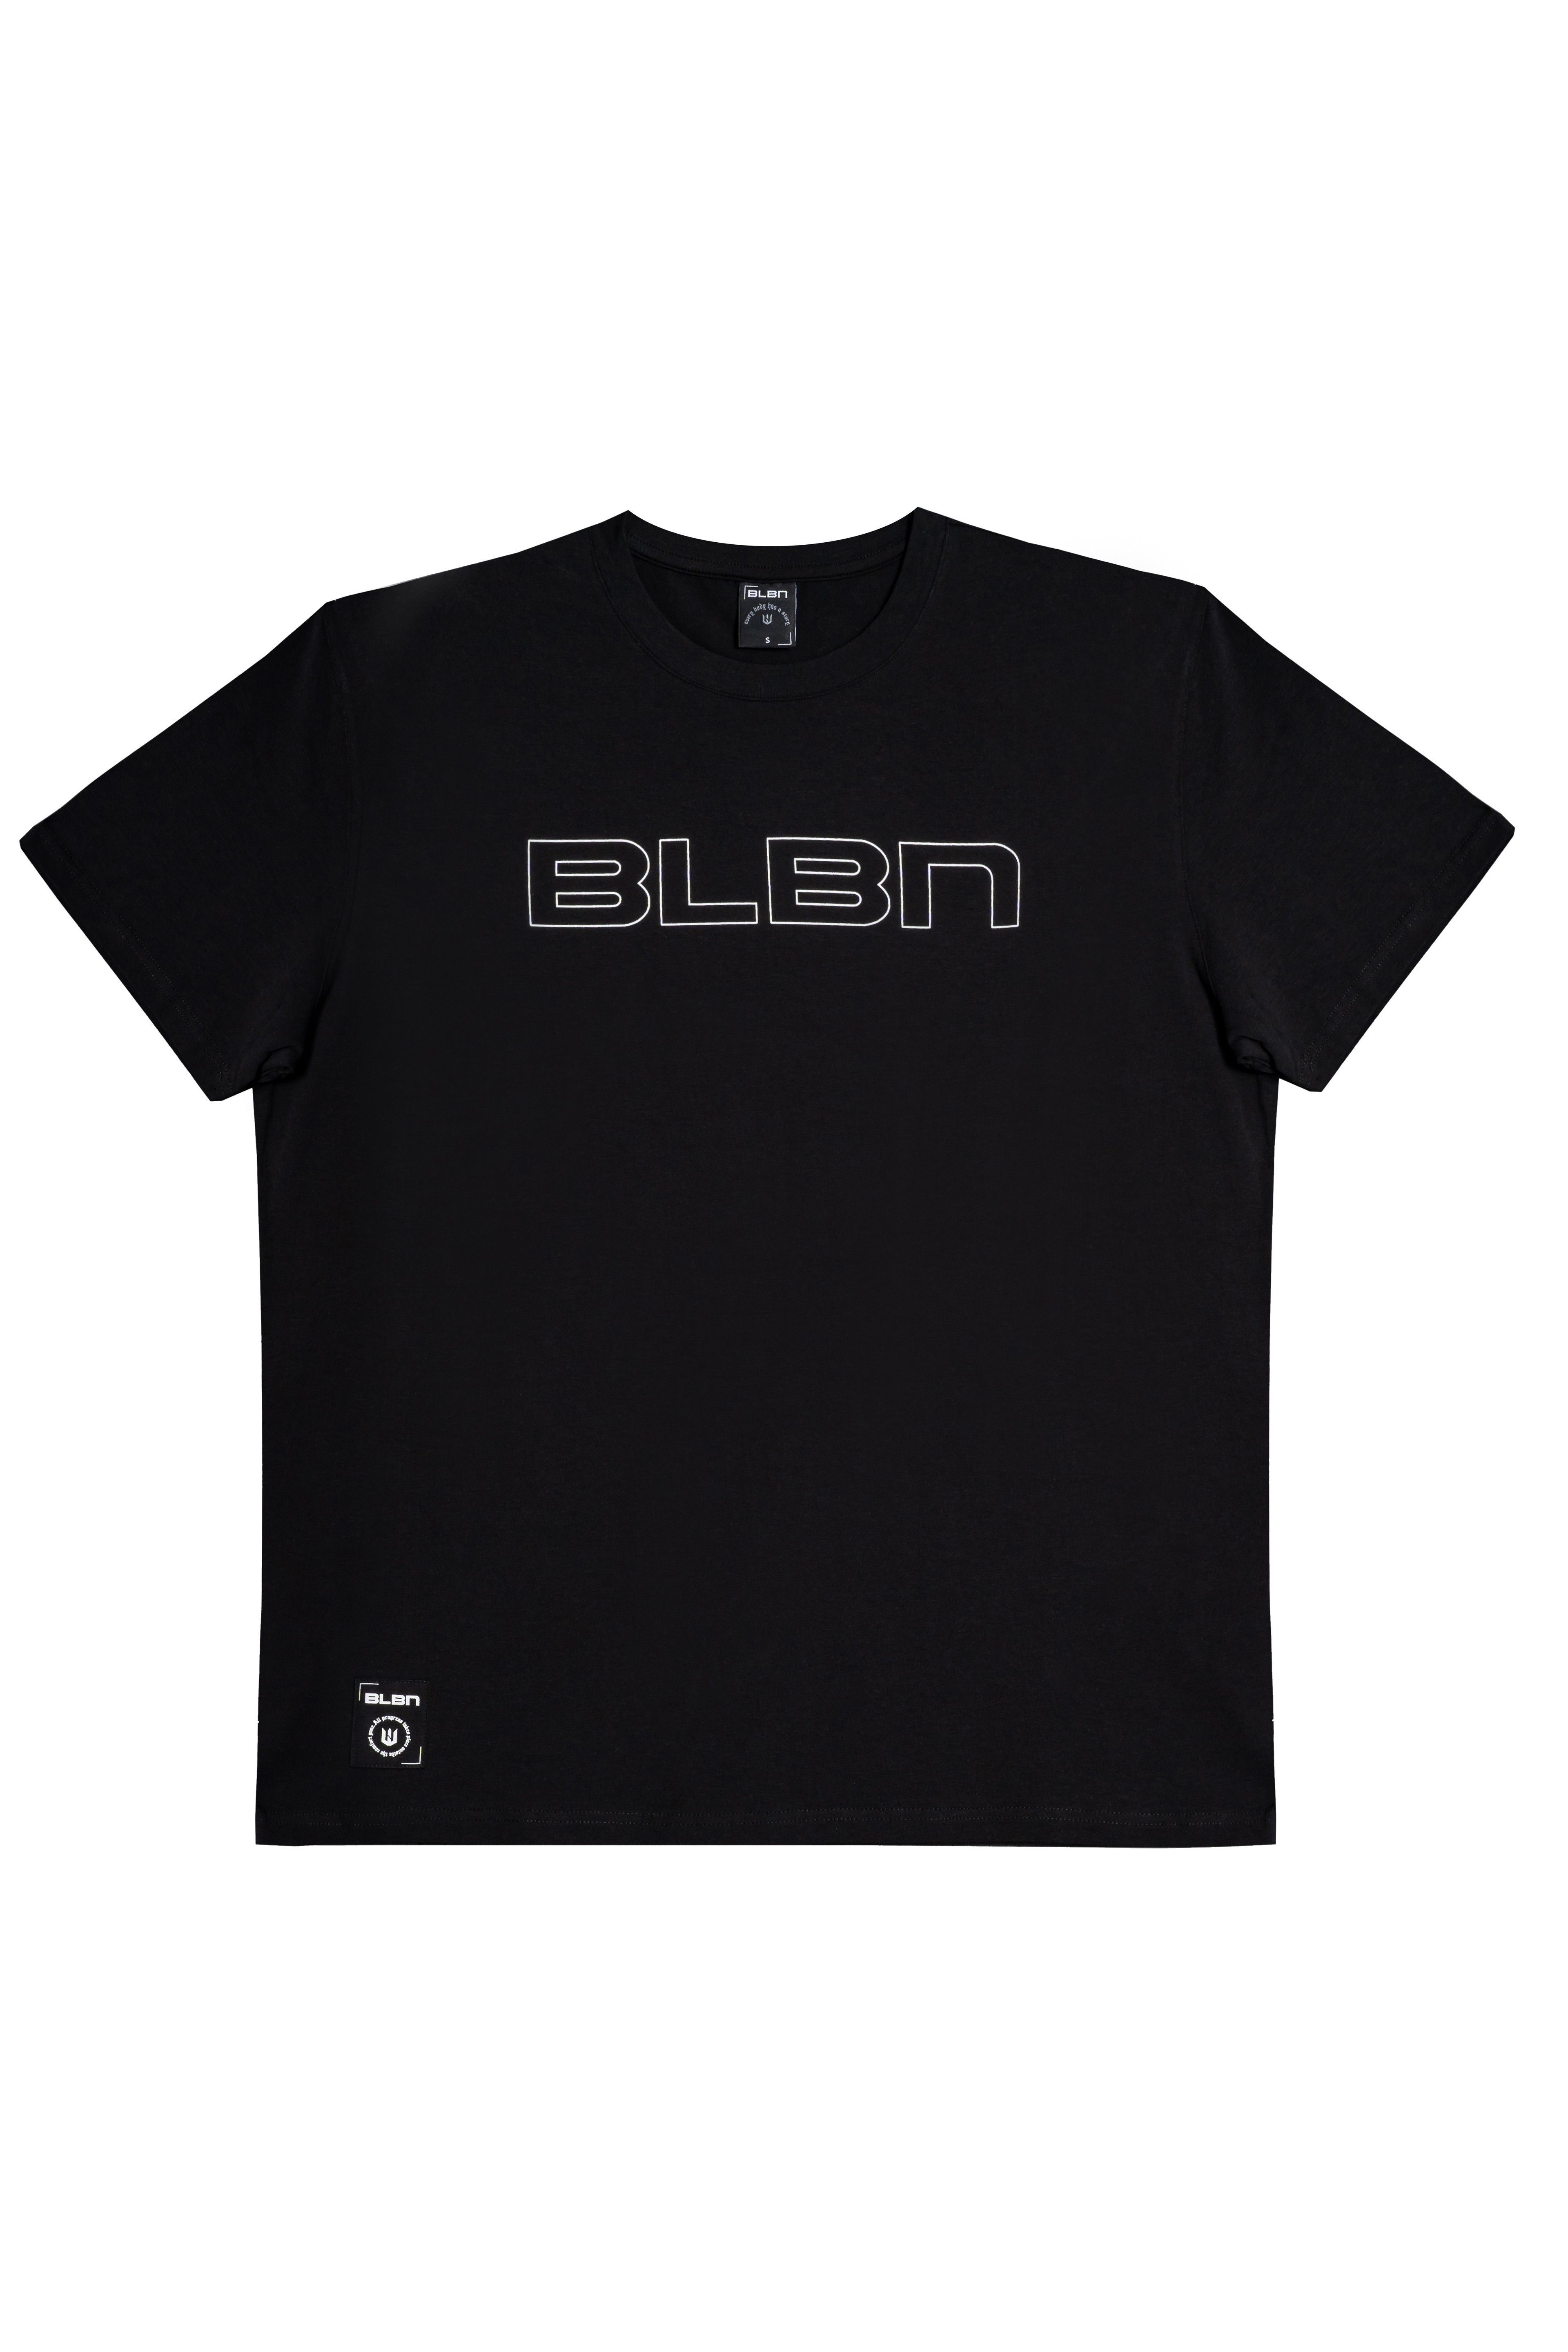 BLBN Tshirt